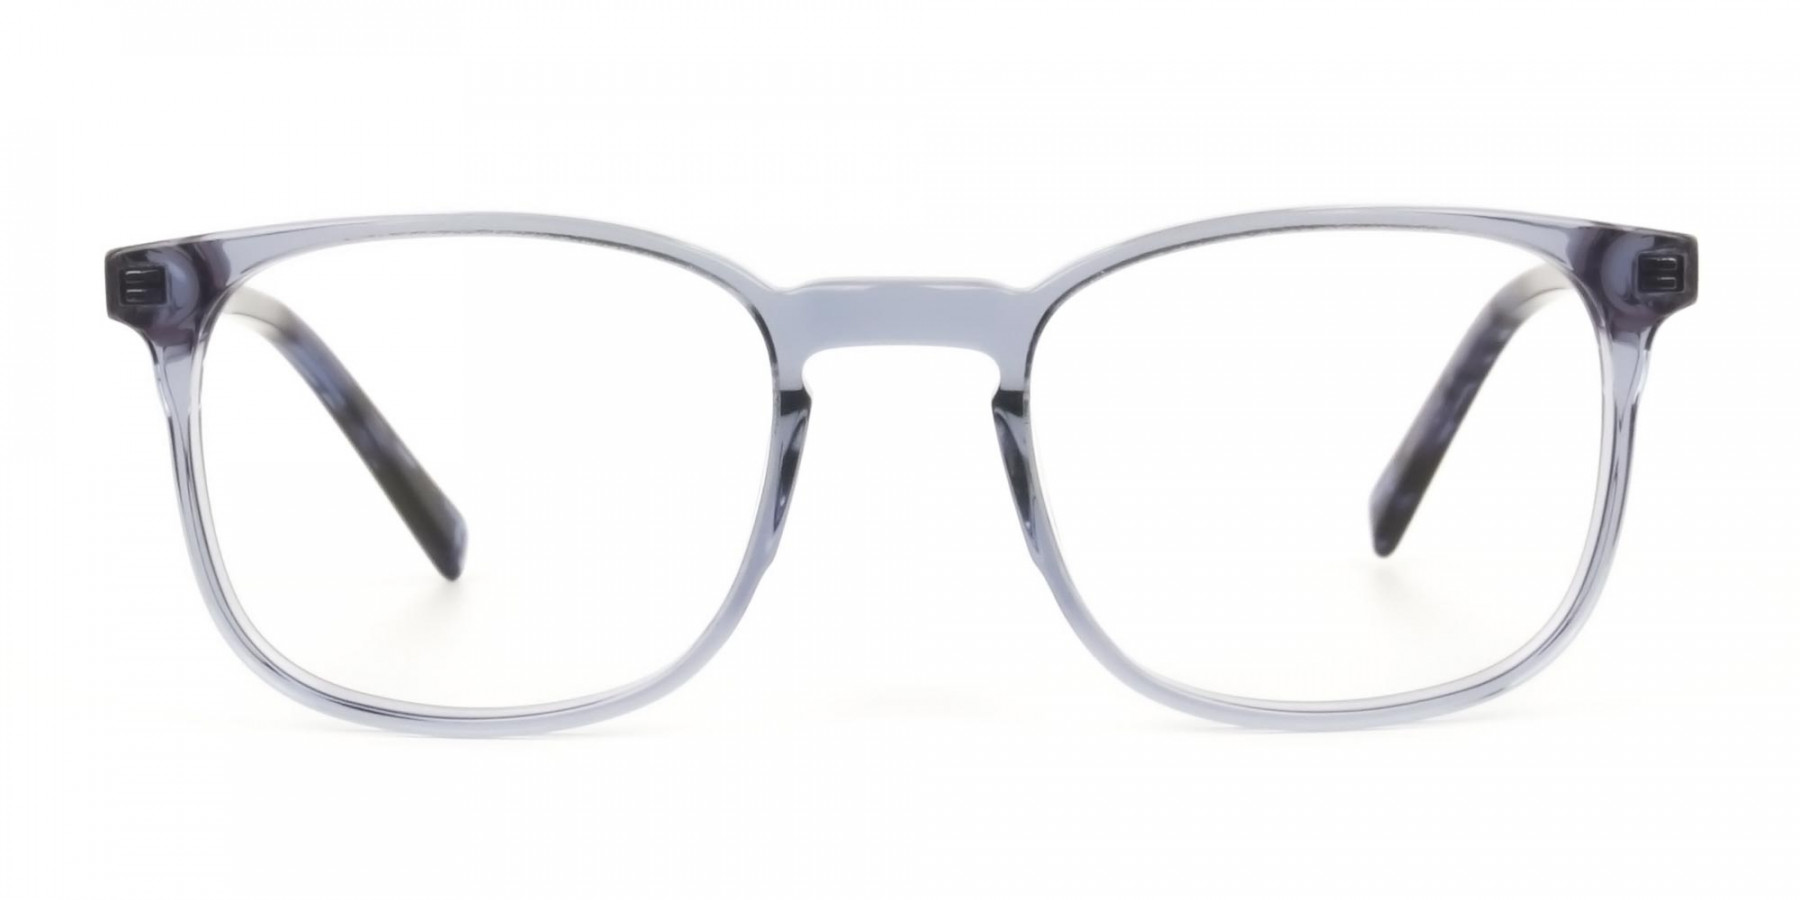 HIVE 3 - Translucent Ocean Blue Tortoise Square glasses | Specscart.®